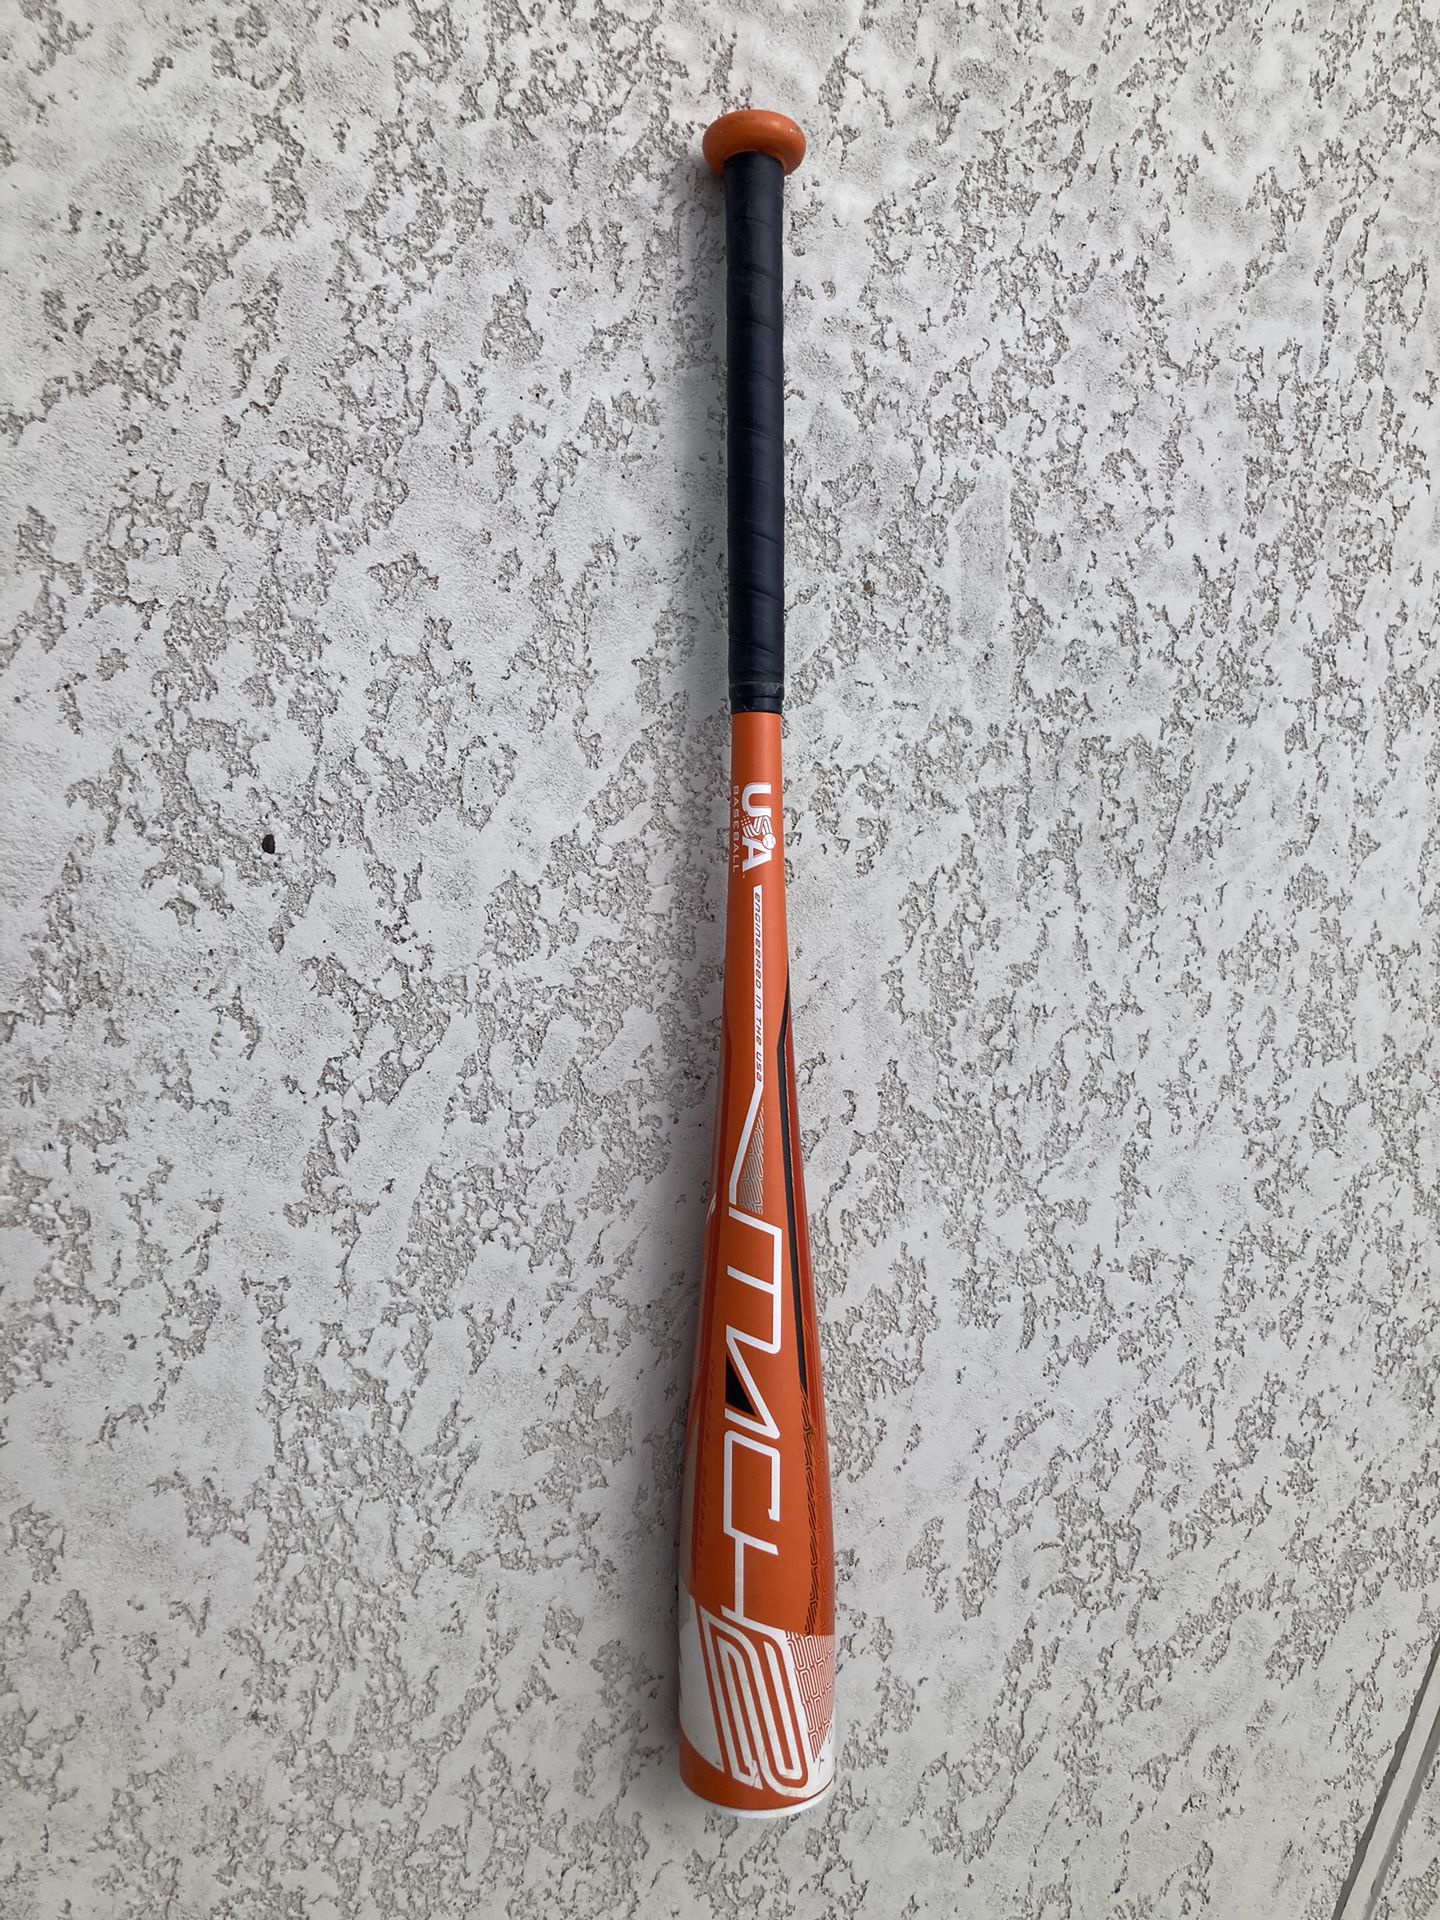 Rawlings Mach 2 Baseball Bat 27”